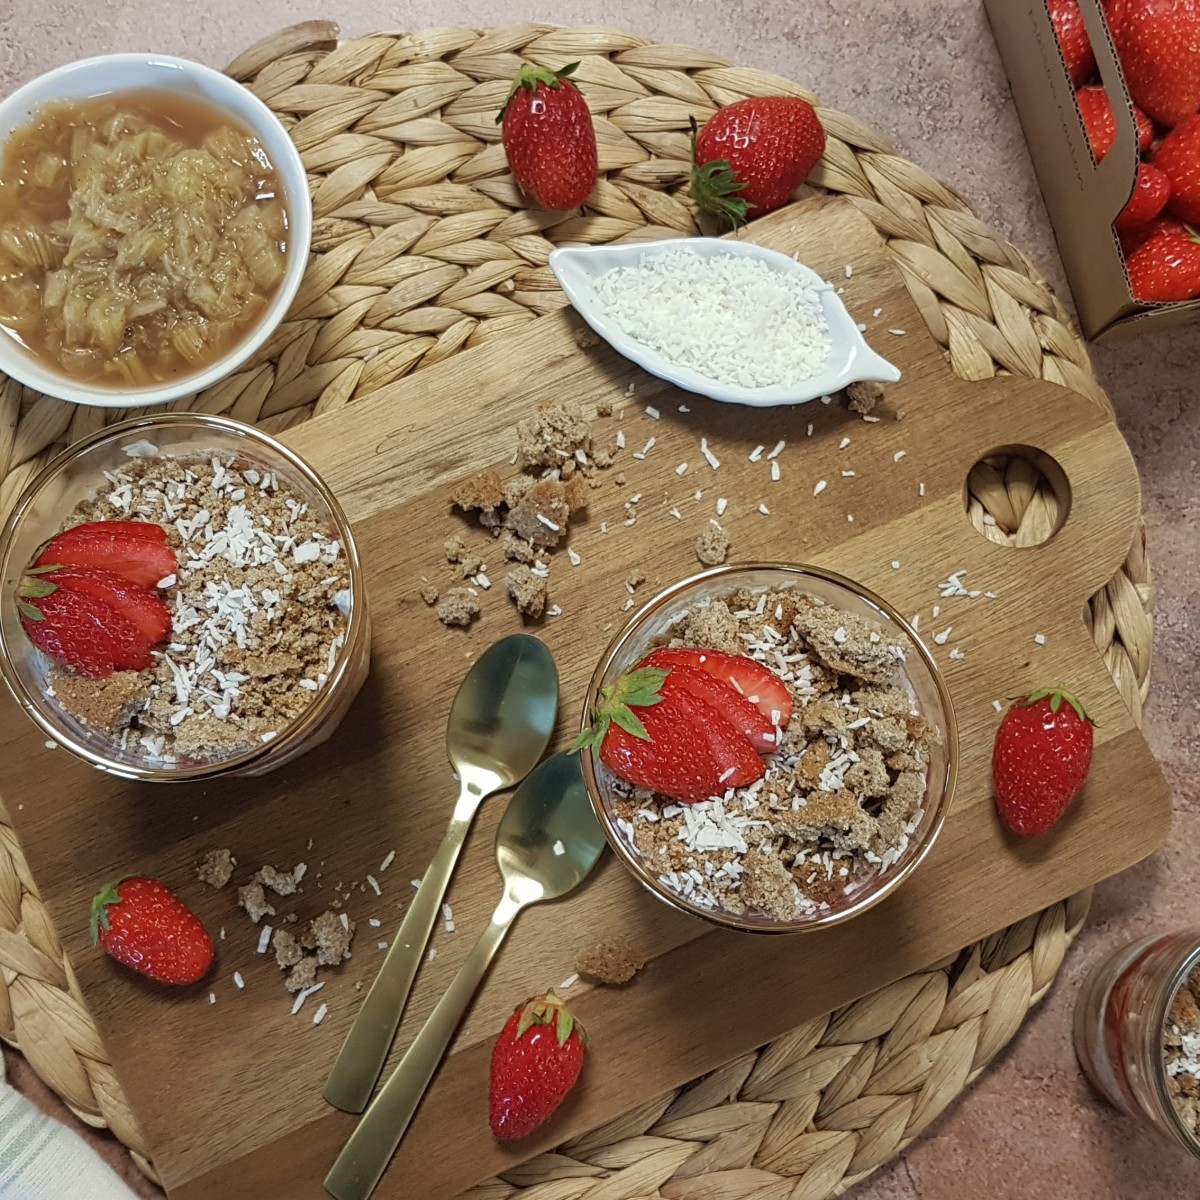 Compote de rhubarbe et purée de fraises, yaourt végétal aux graines de chia et sablés au sarrasin